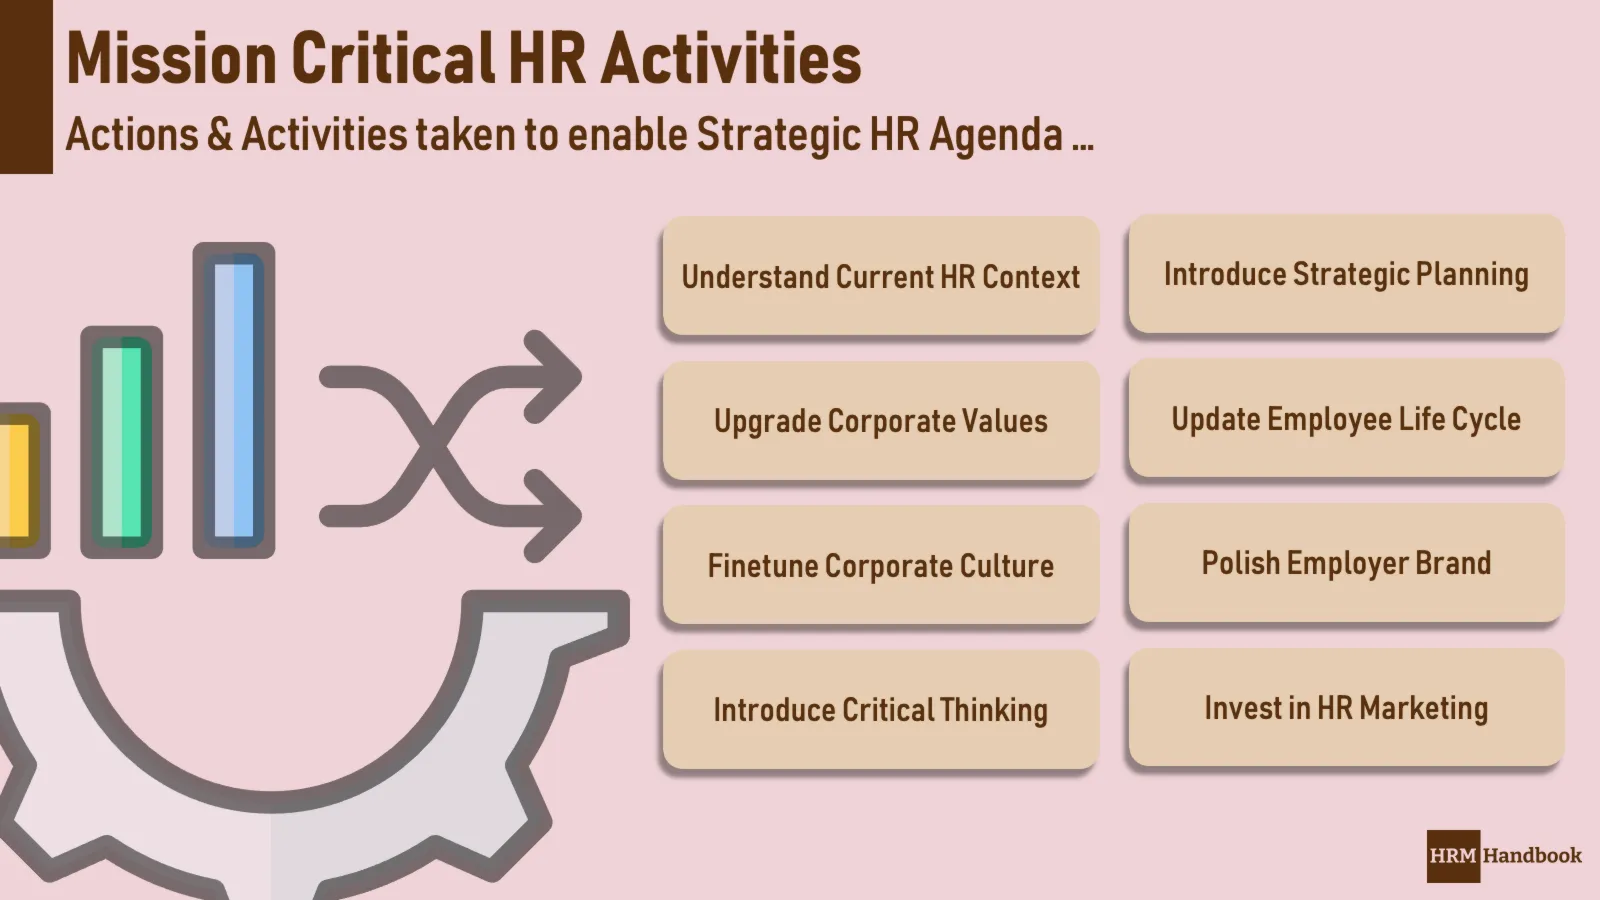 A list of Critical HR Activities